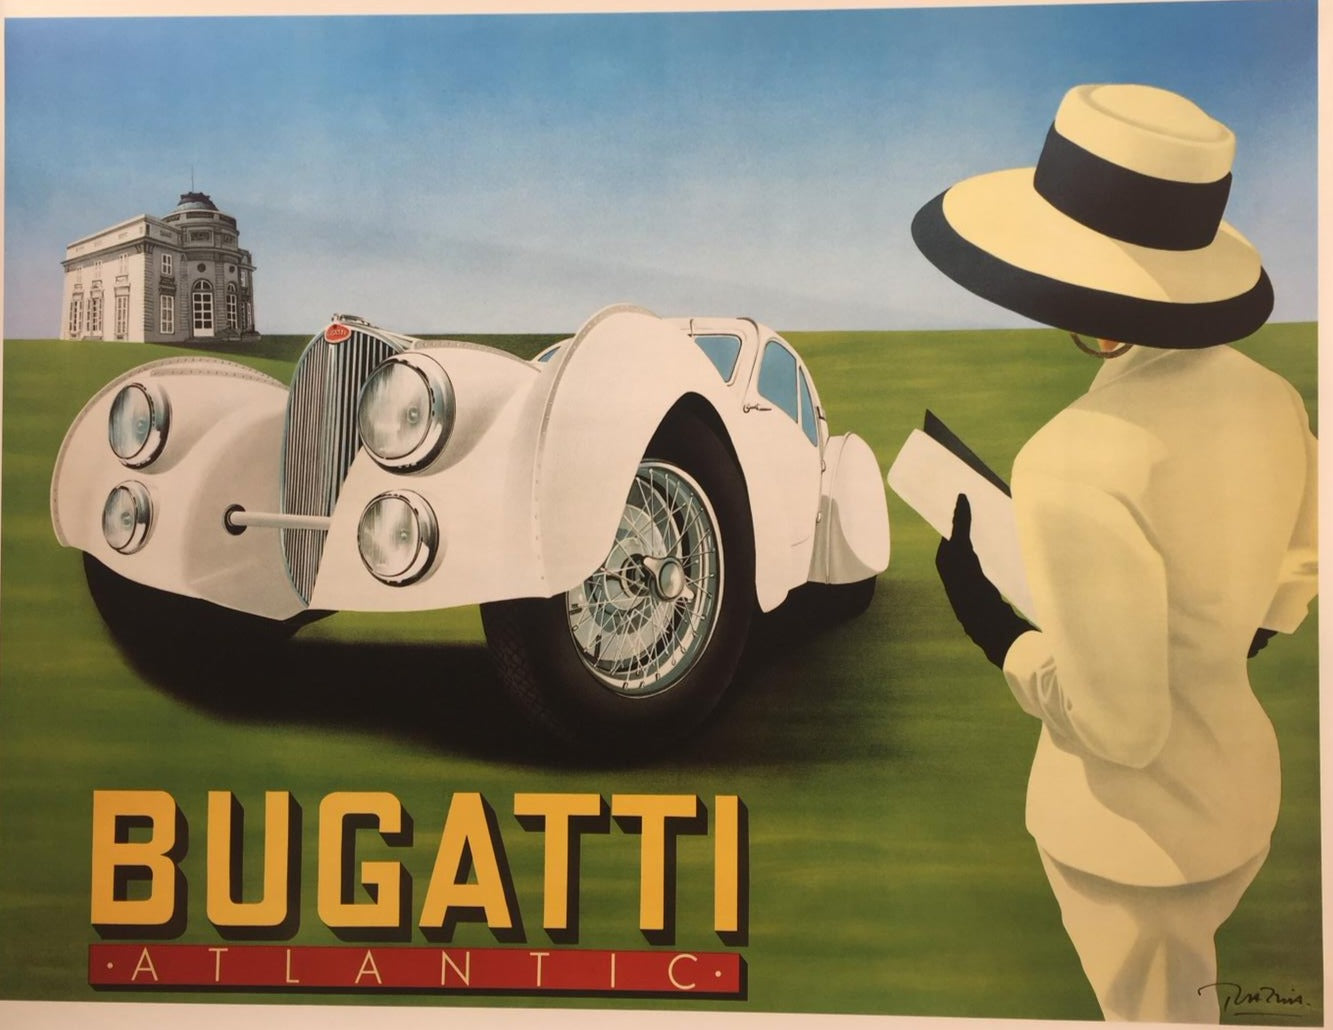 Bugatti Atlantica by Razzia